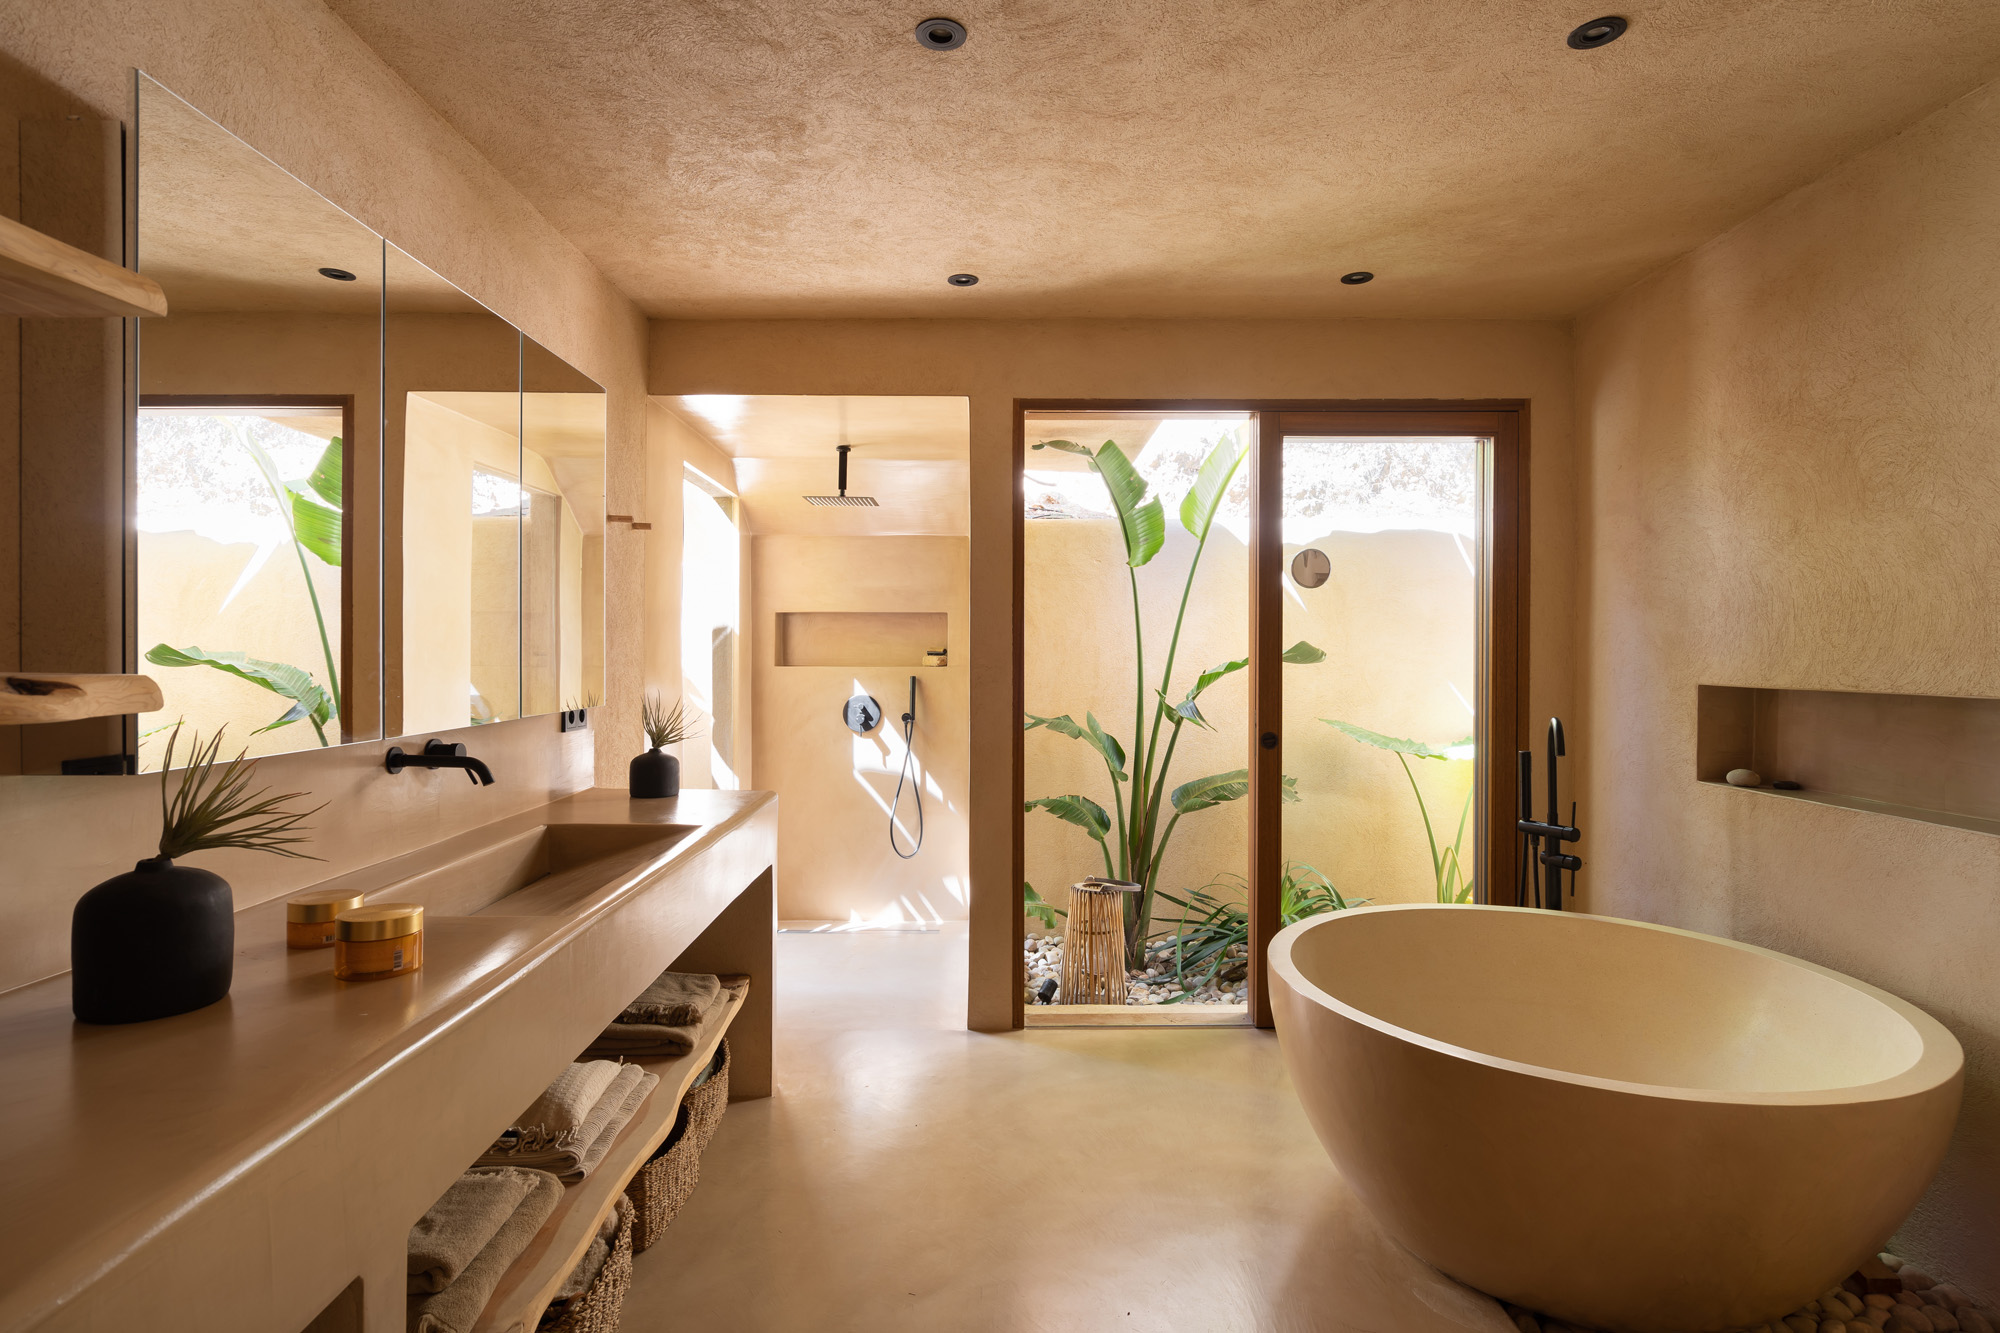 Bathroom of villa Nomad by Dolores Batselaere